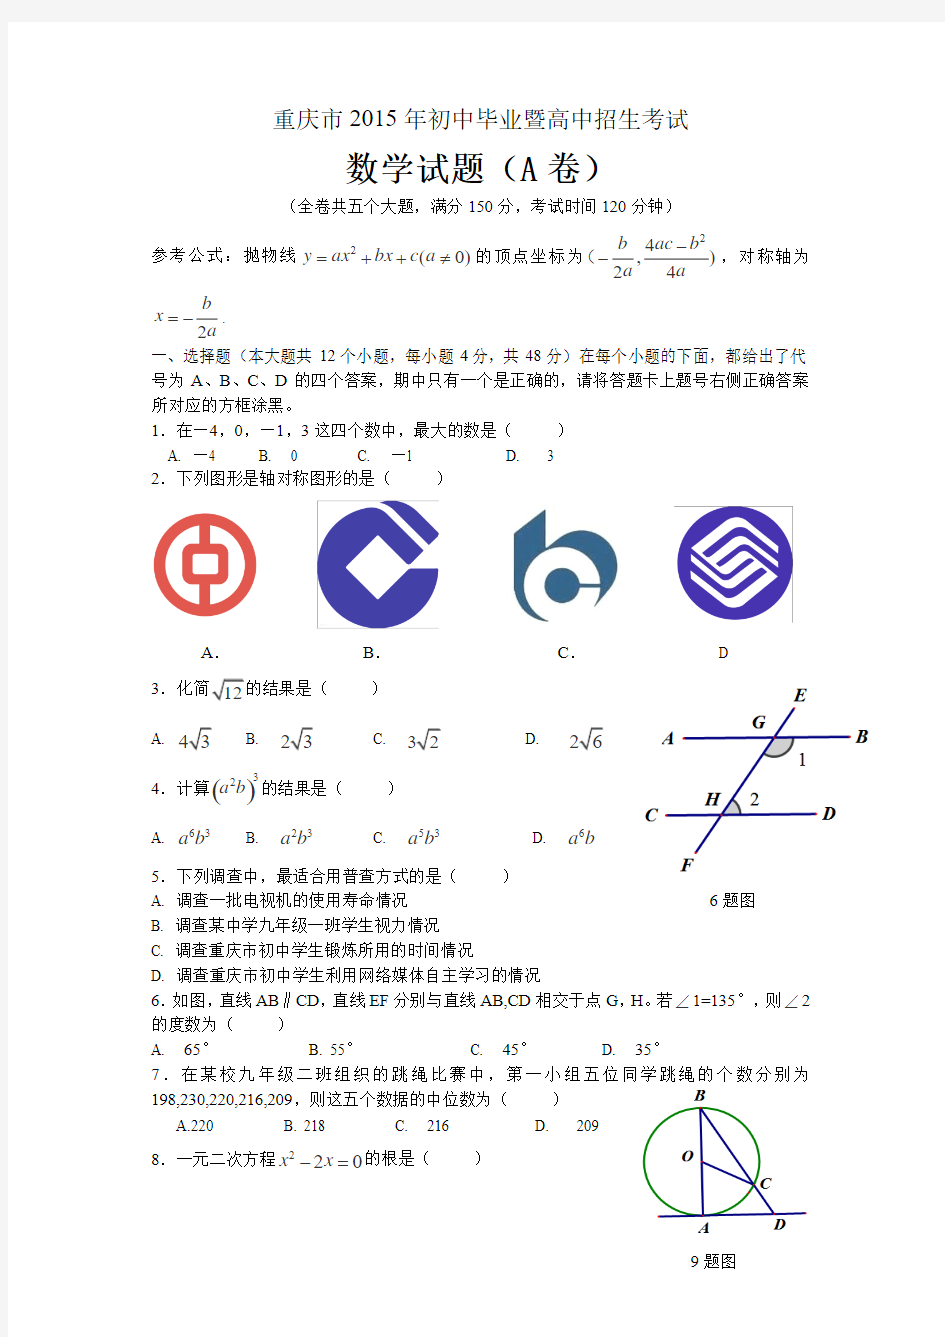 重庆市2015年初中毕业暨高中招生考试数学试题及答案(A卷)